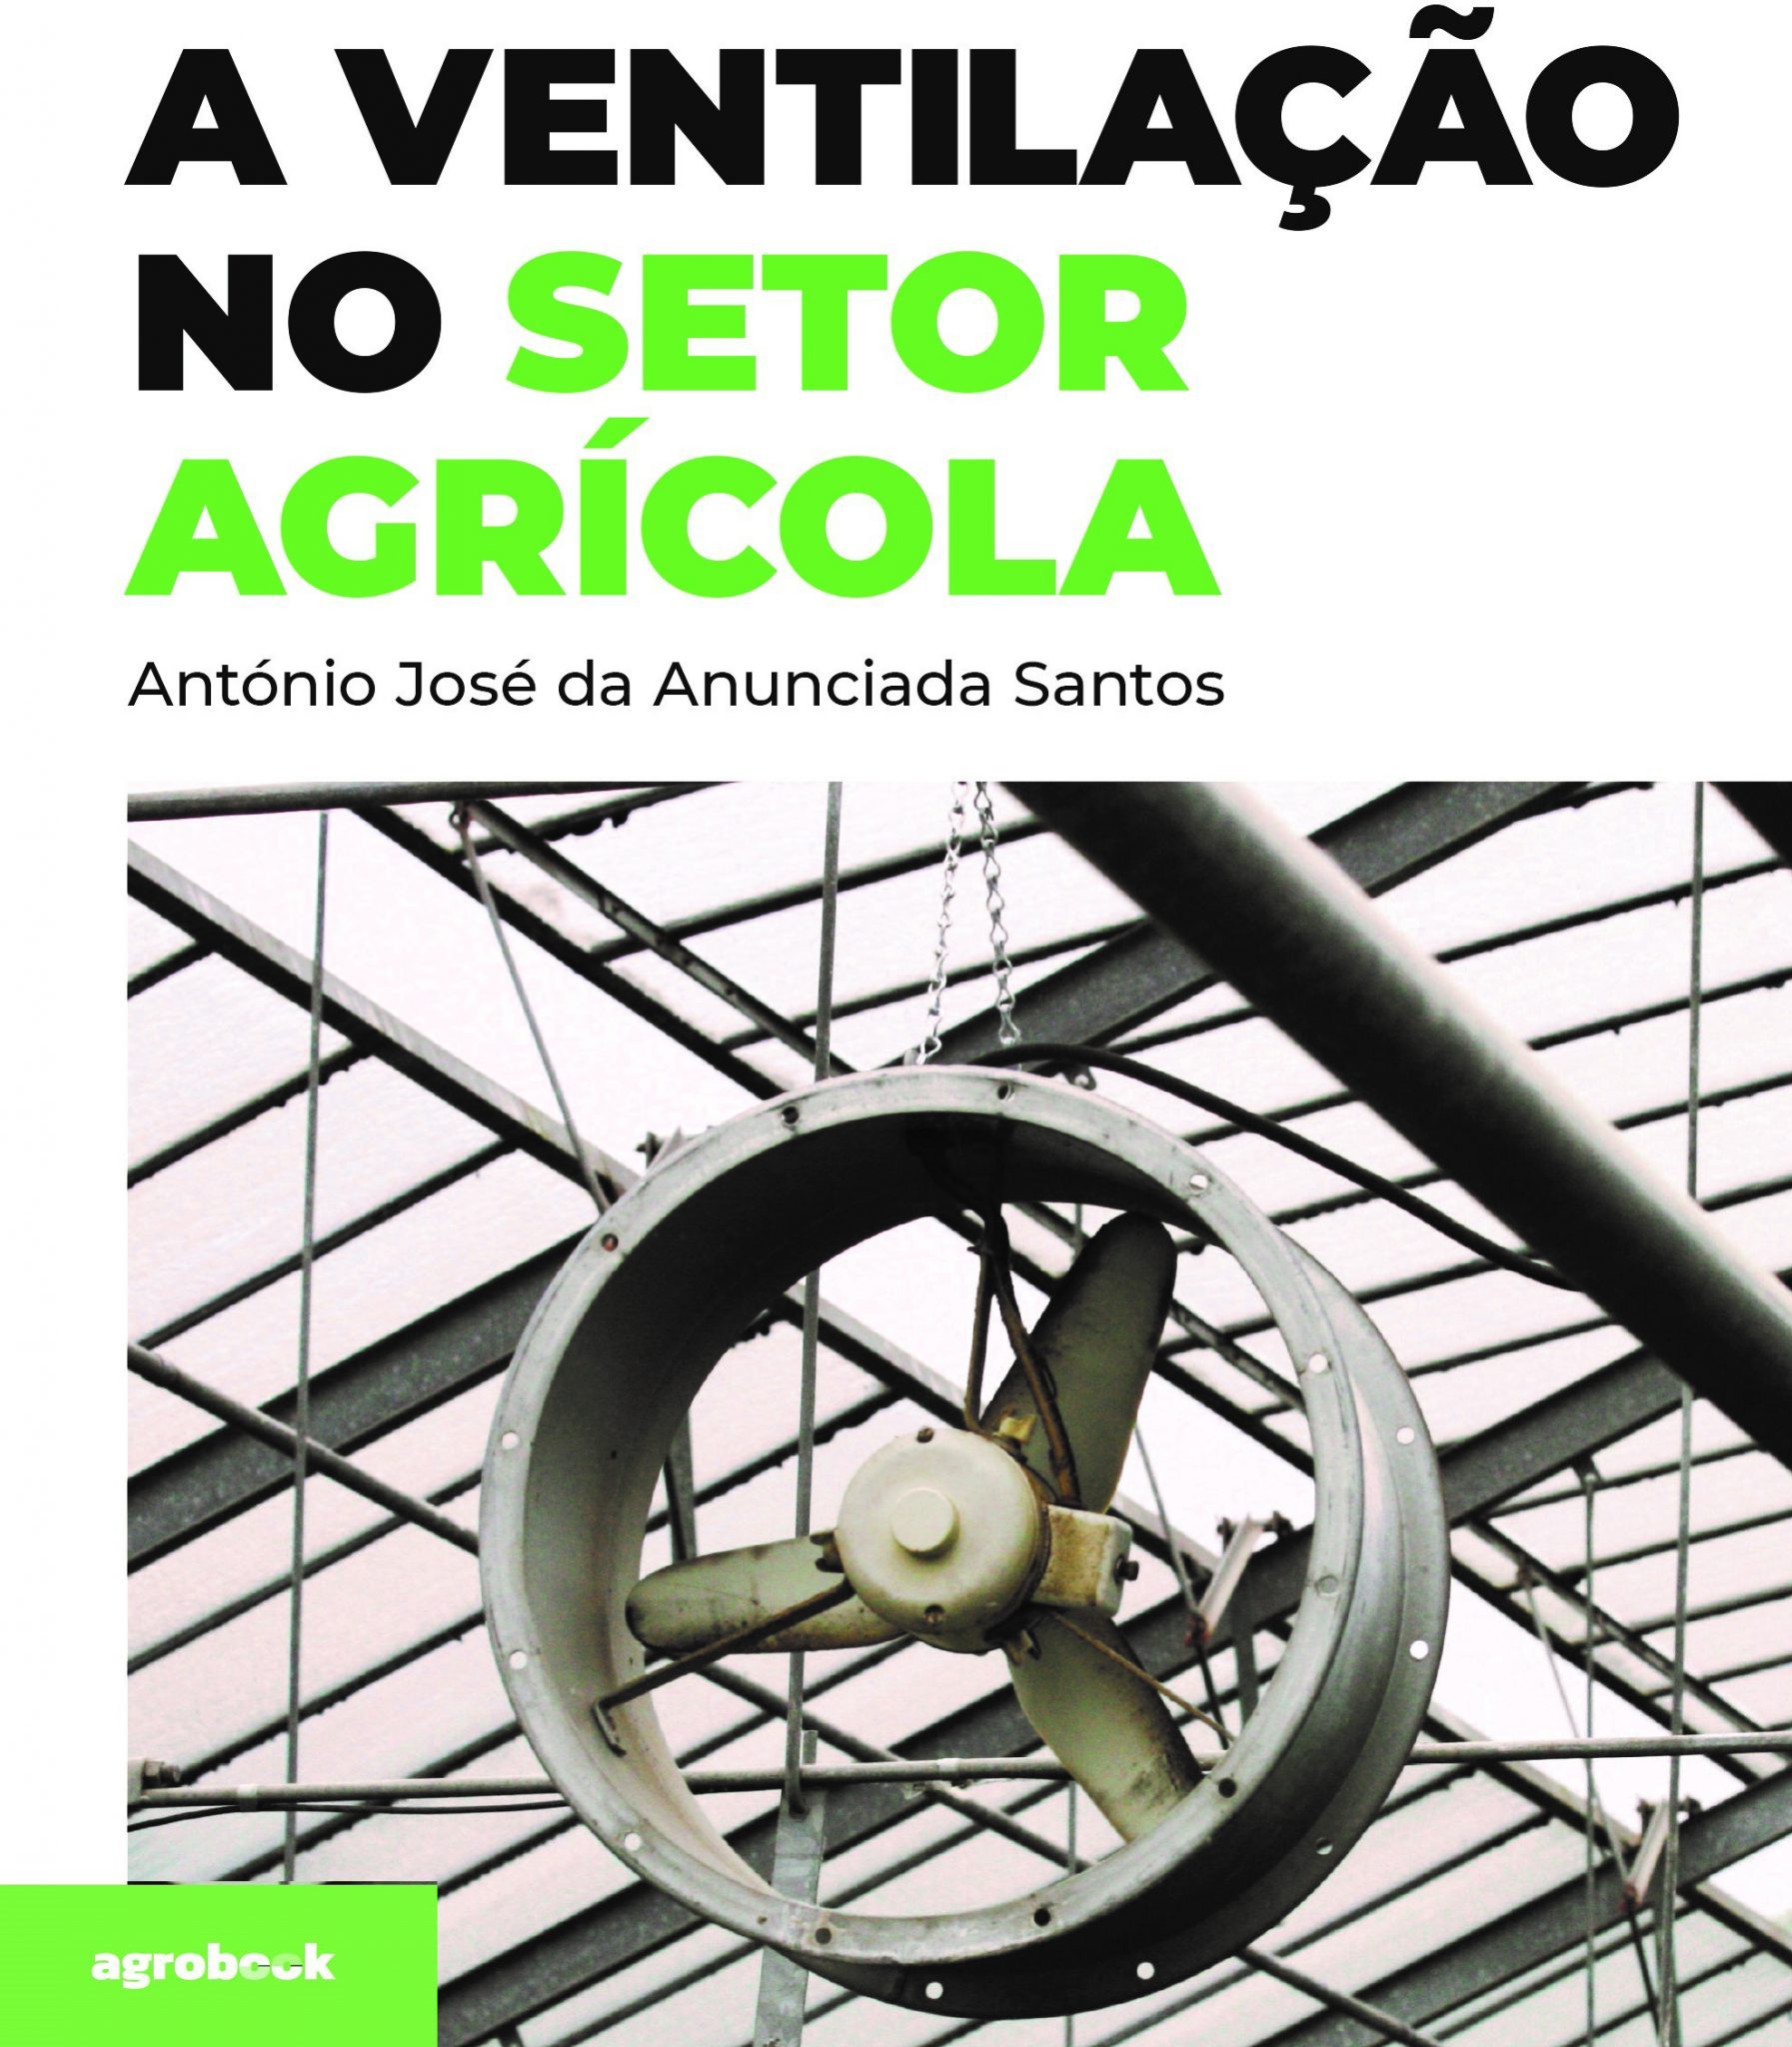 Agrobook lança livro sobre a instalação de ventilação no setor agrícola